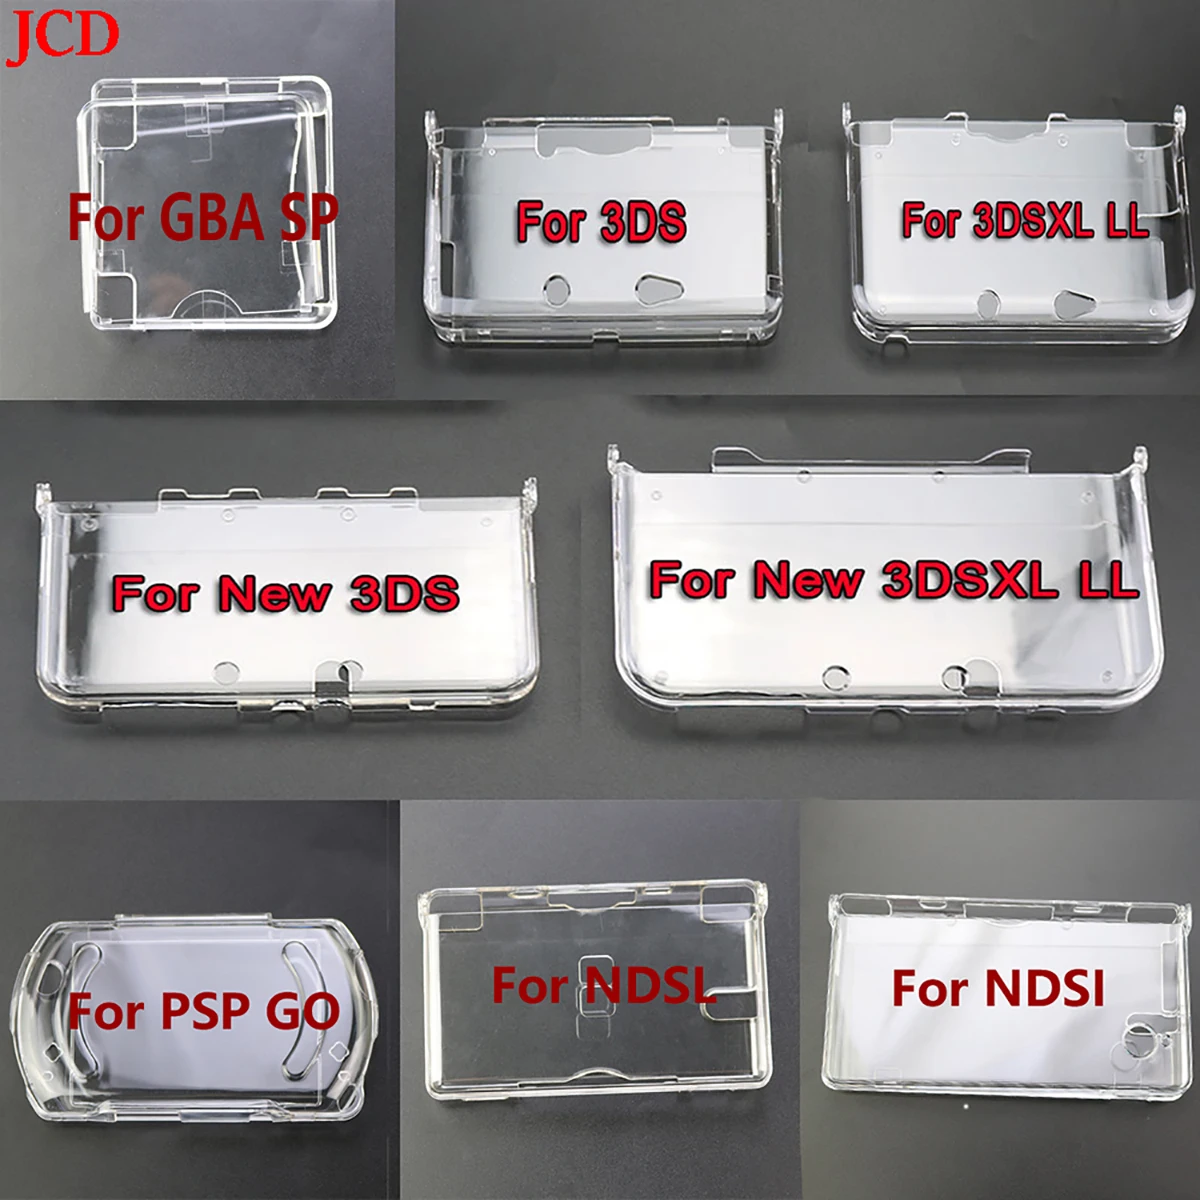 

JCD 1 шт. пластиковый прозрачный Кристальный защитный жесткий чехол для консоли 3DS/New 3DS/New 3DS XL LL/NDSL/NDSI